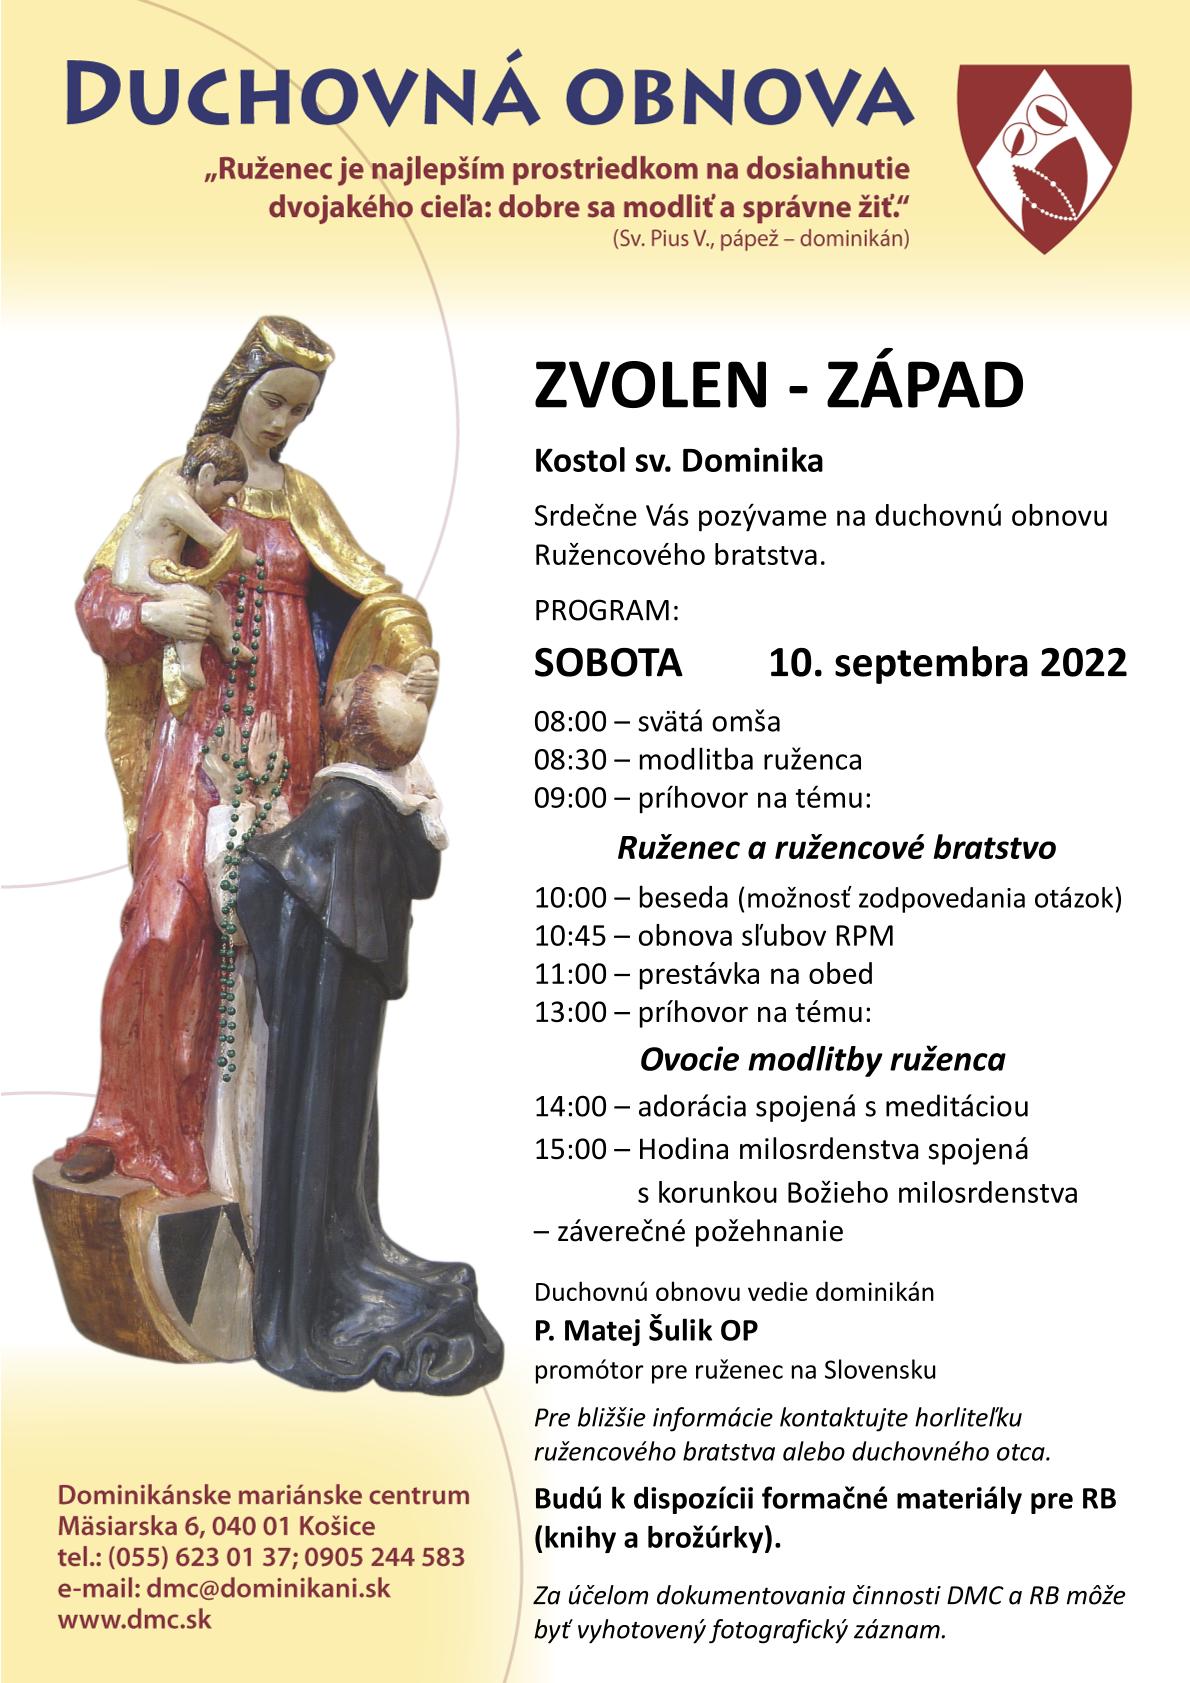 Duchovná obnova Ružencového bratstva Zvolen-Západ 10. 9. 2022